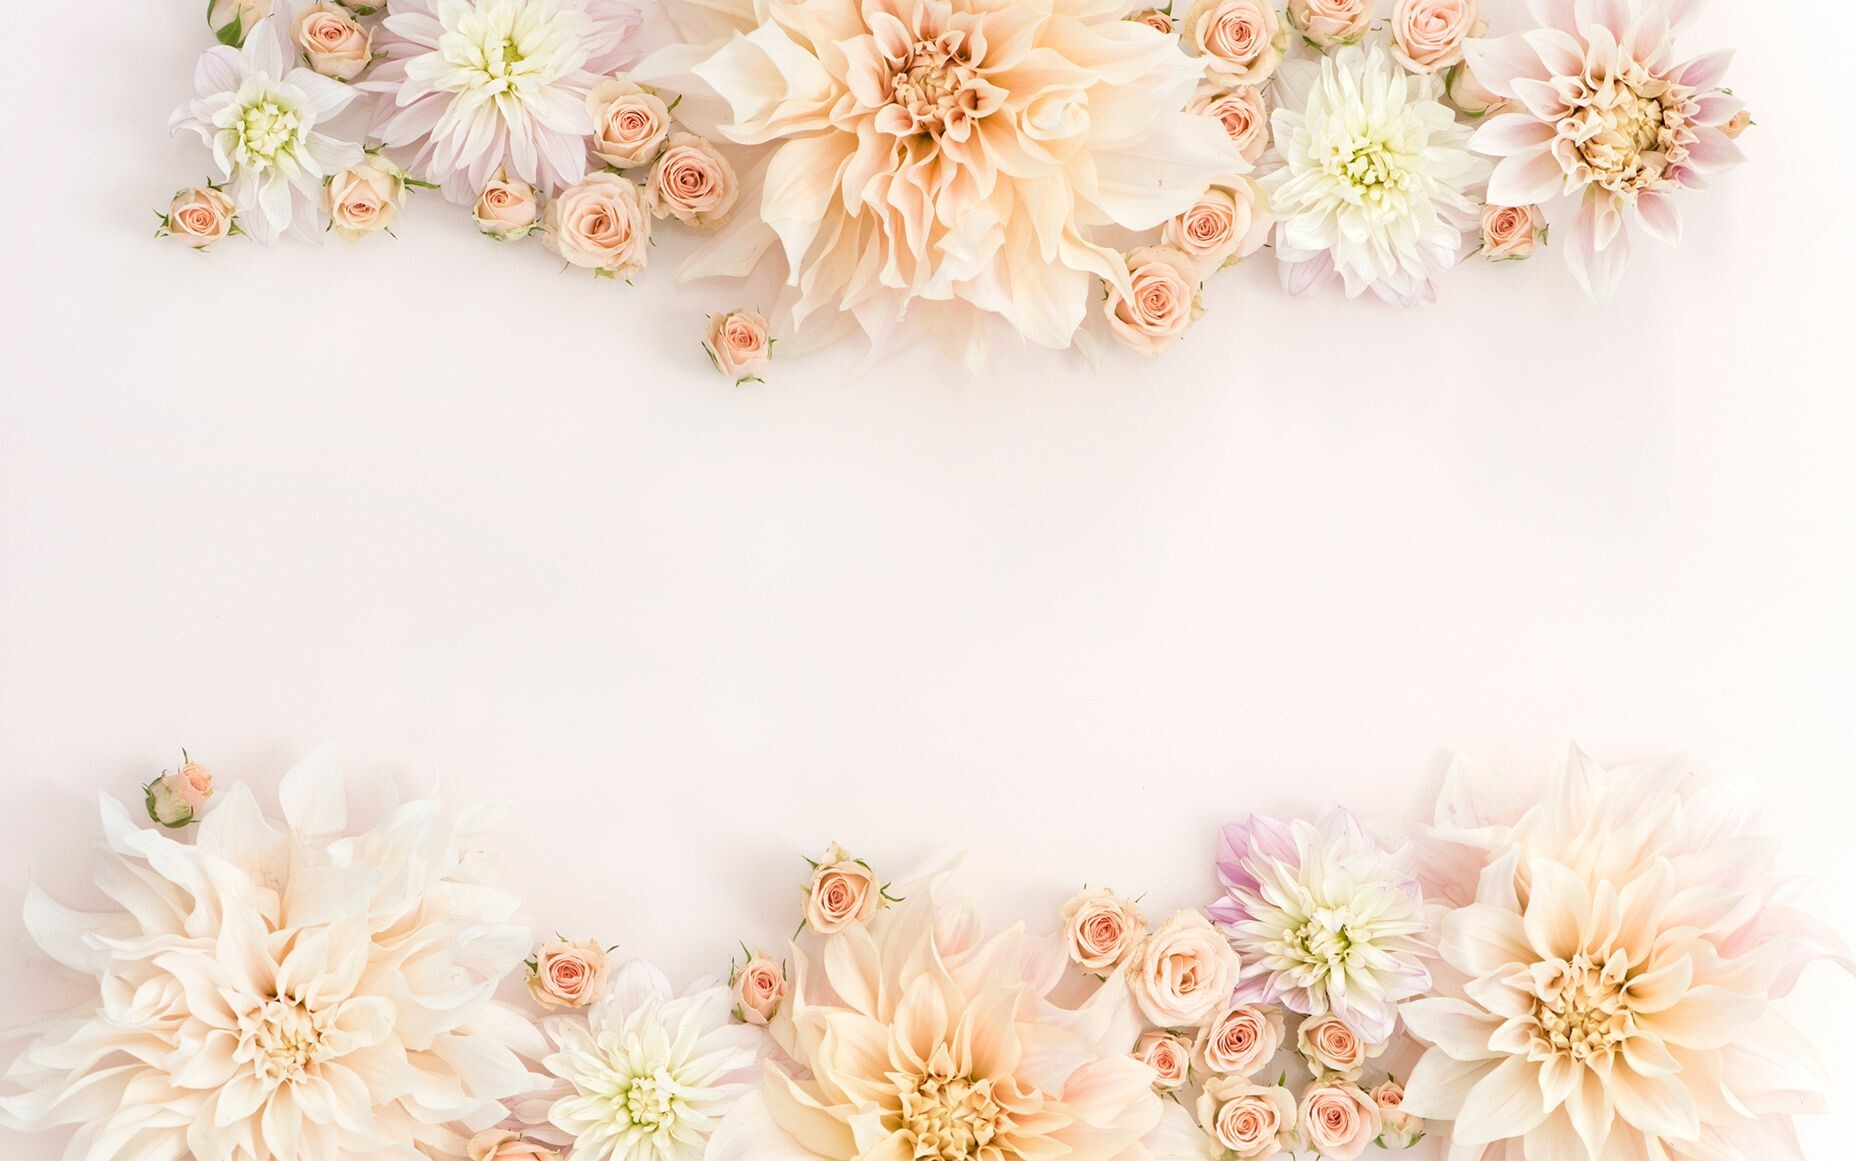 Floral Desktop Wallpaper 46 images